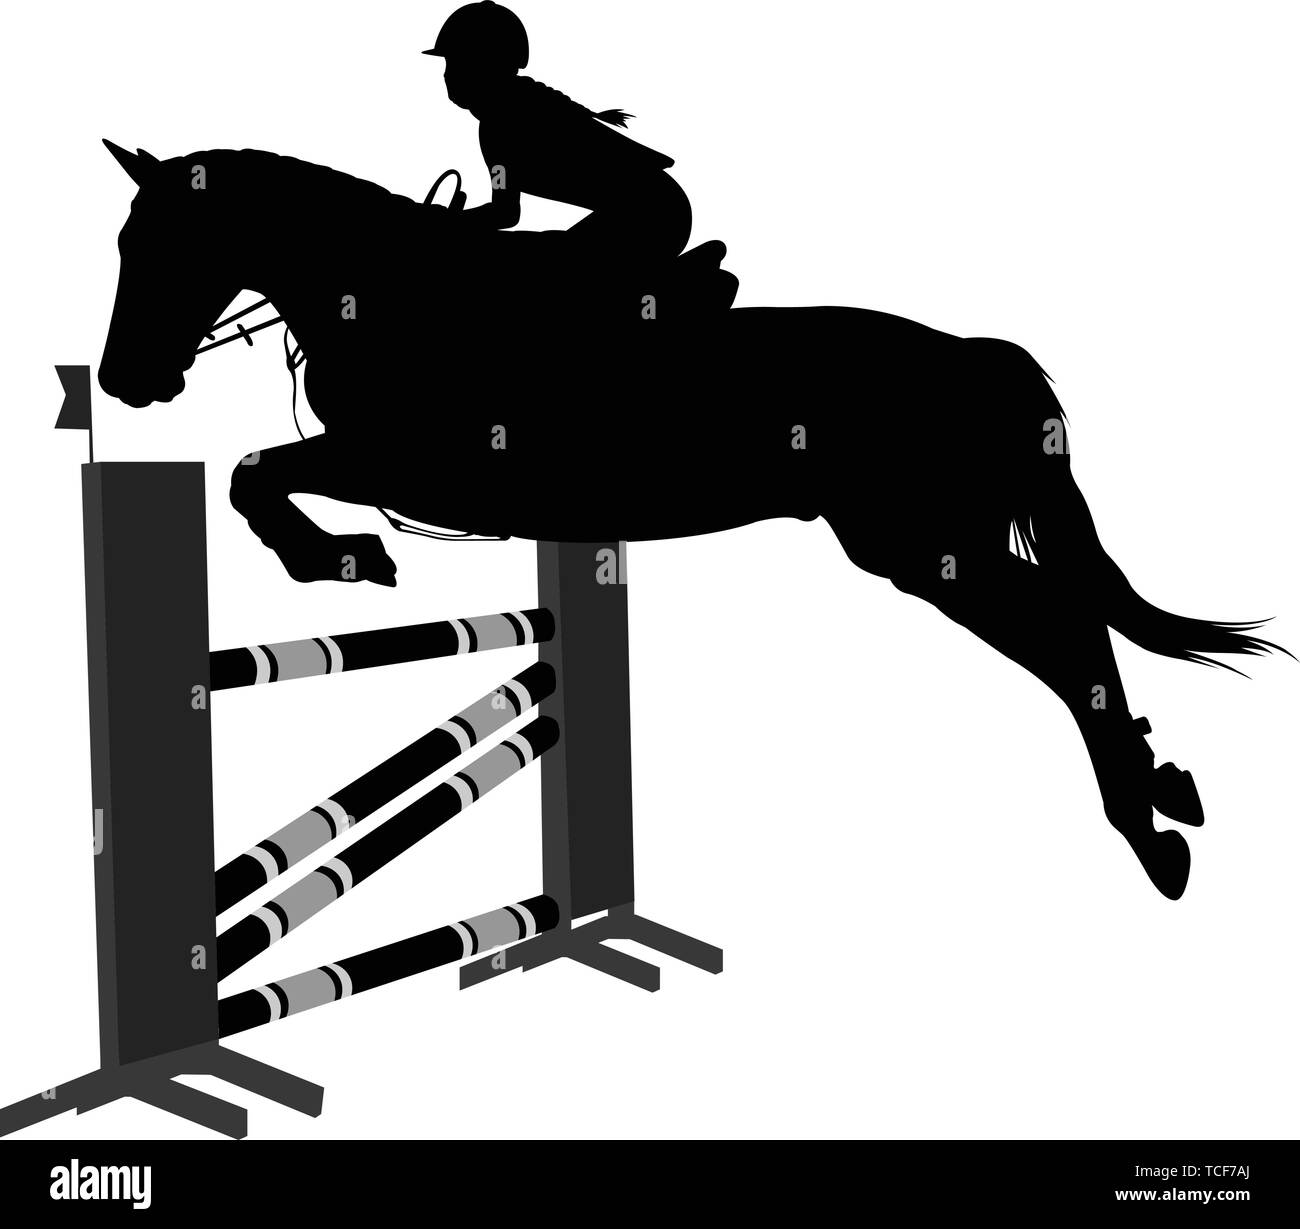 Show jumping.deporte ecuestre caballo con jinete saltando un obstáculo silueta - vector Ilustración del Vector